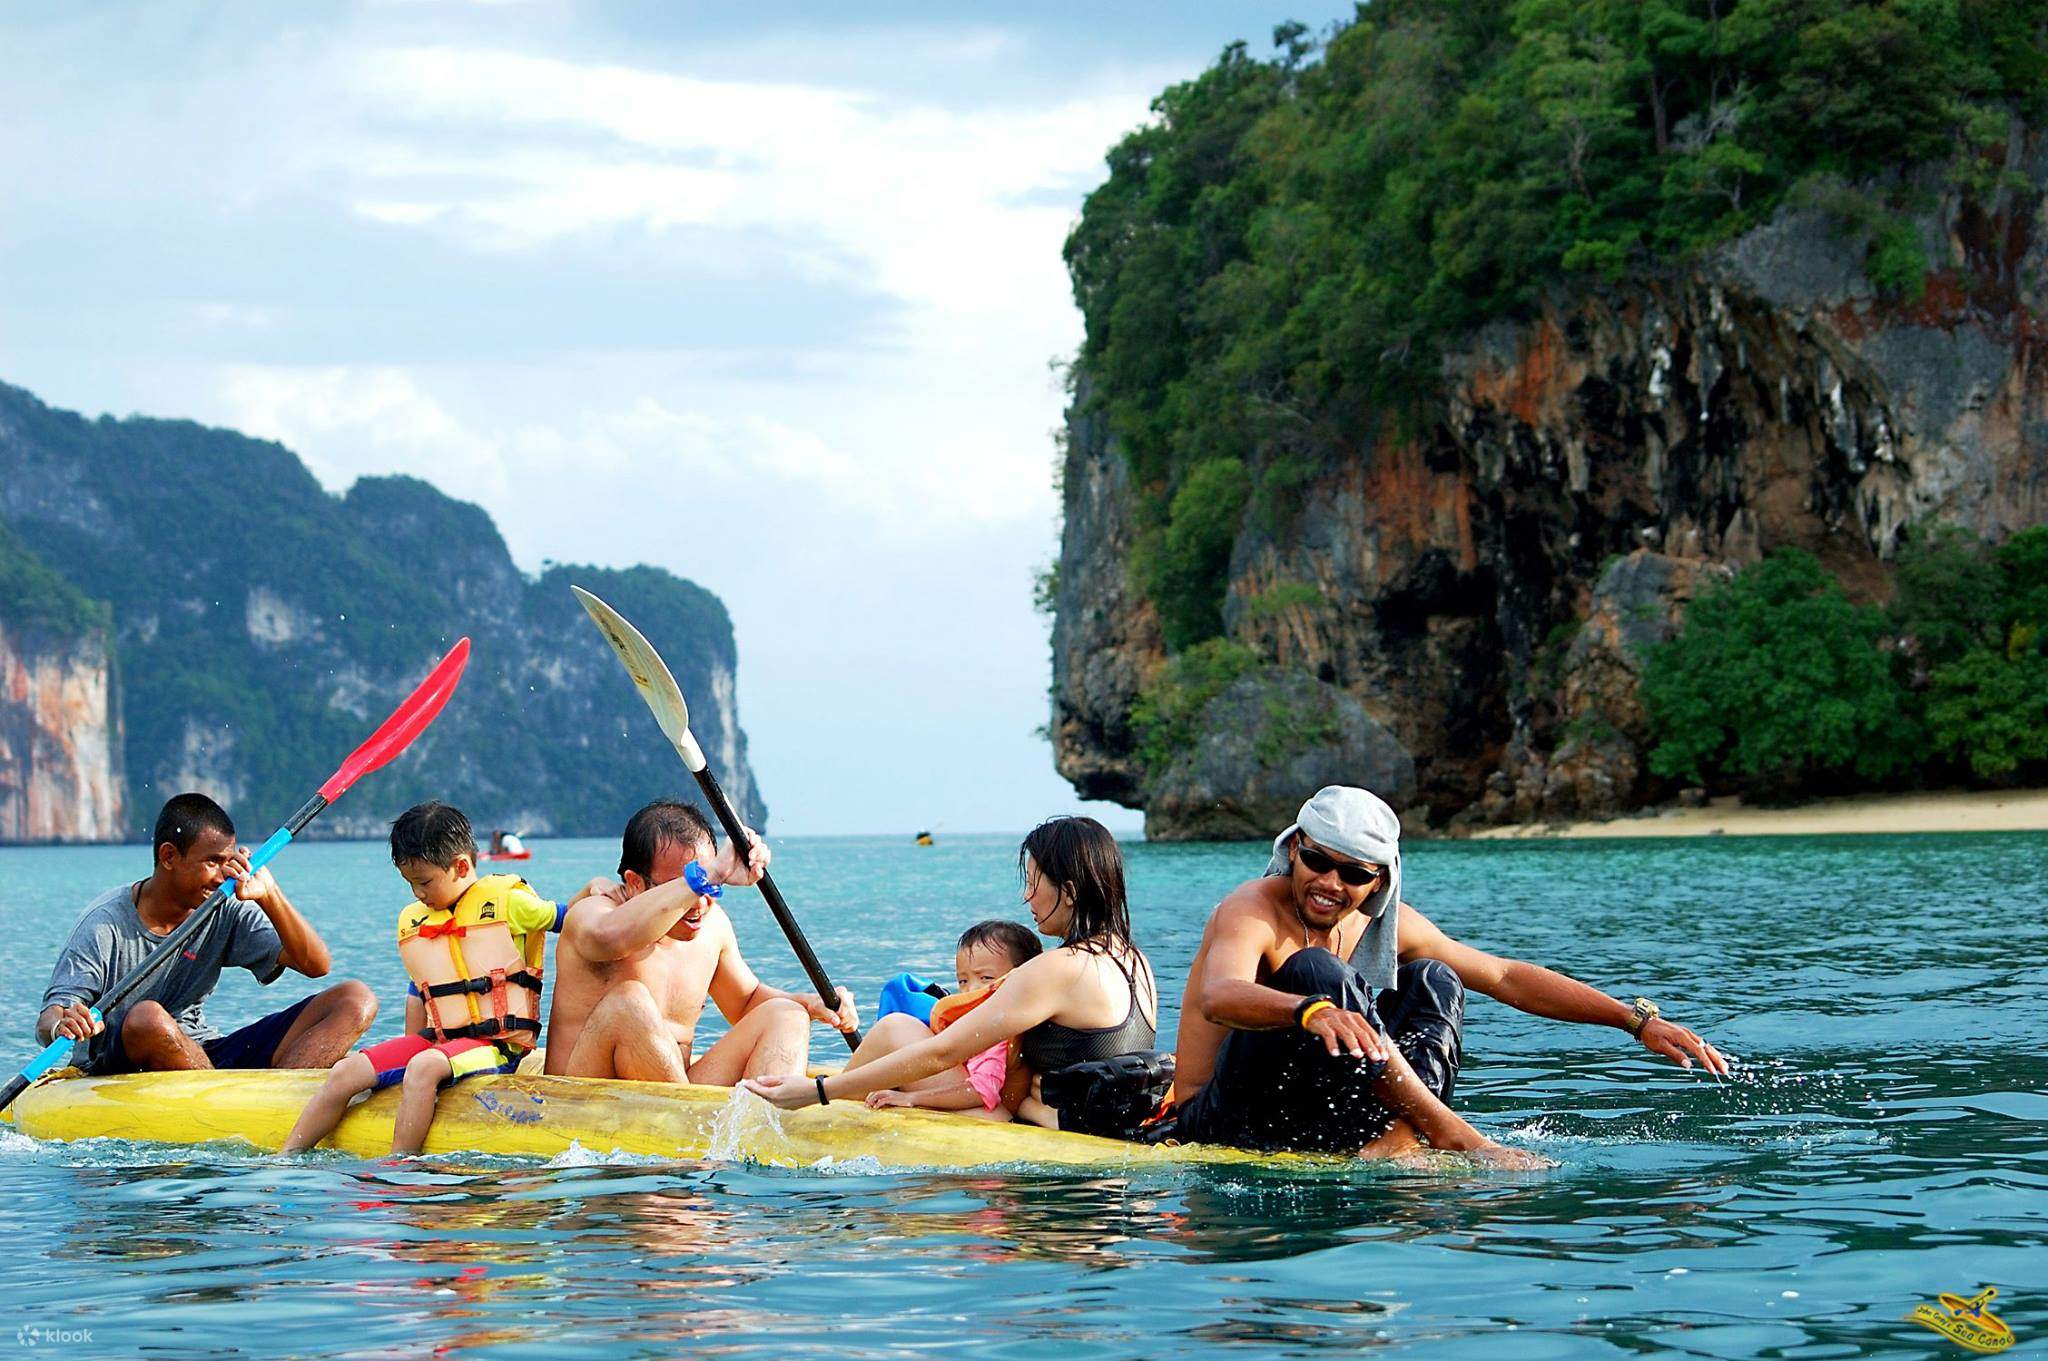 Дешево в тайланд. Пхукет Tourism. Каноэ Пхукет. Тайланд туризм. Пляжный вид туризма.